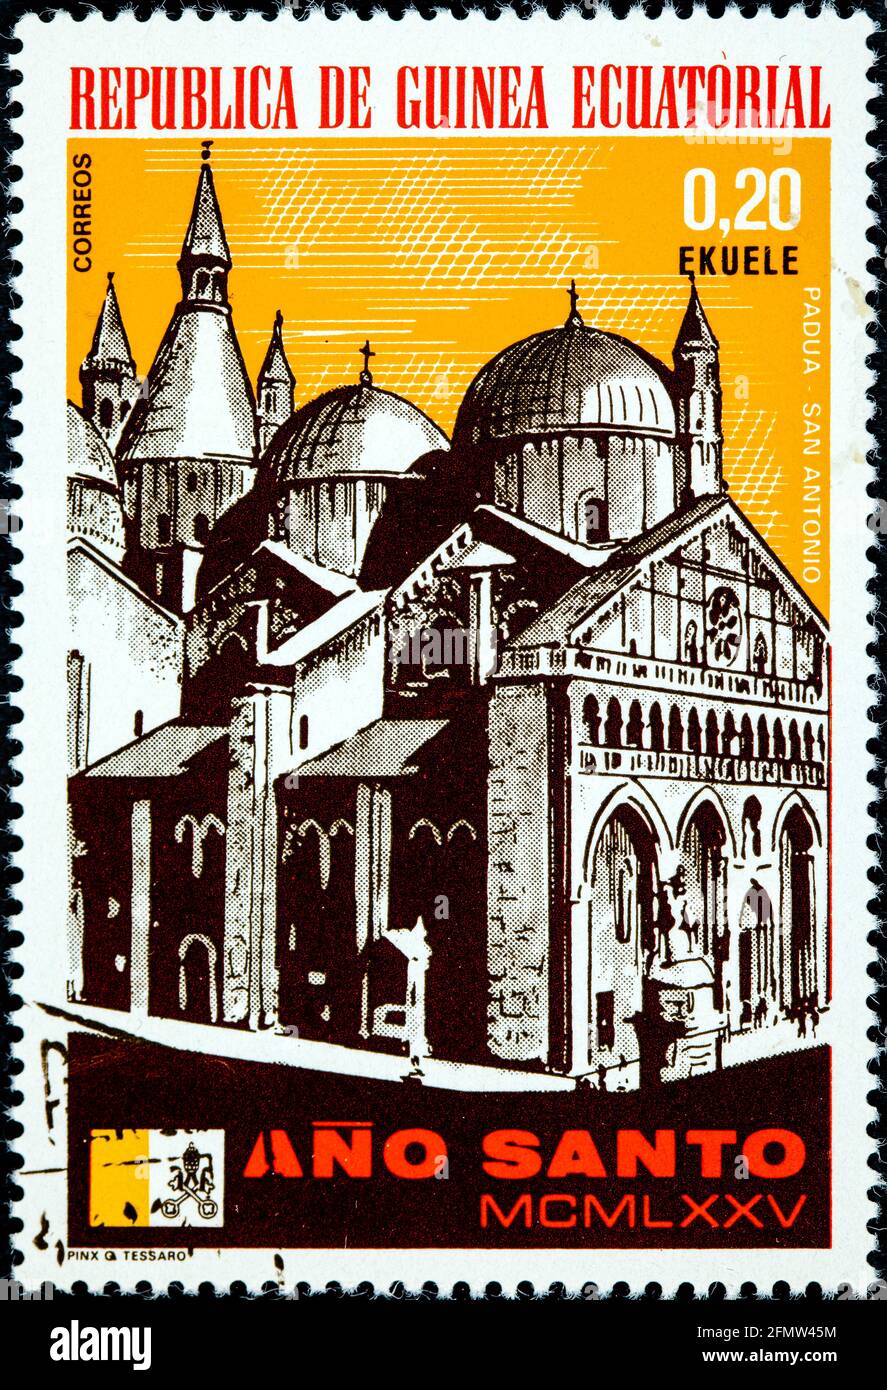 GUINEA EQUATORIALE - CIRCA 1975: Un francobollo stampato in Guinea Equatoriale, anno Santo presentato Padova, il Duomo intorno al 1975 Foto Stock